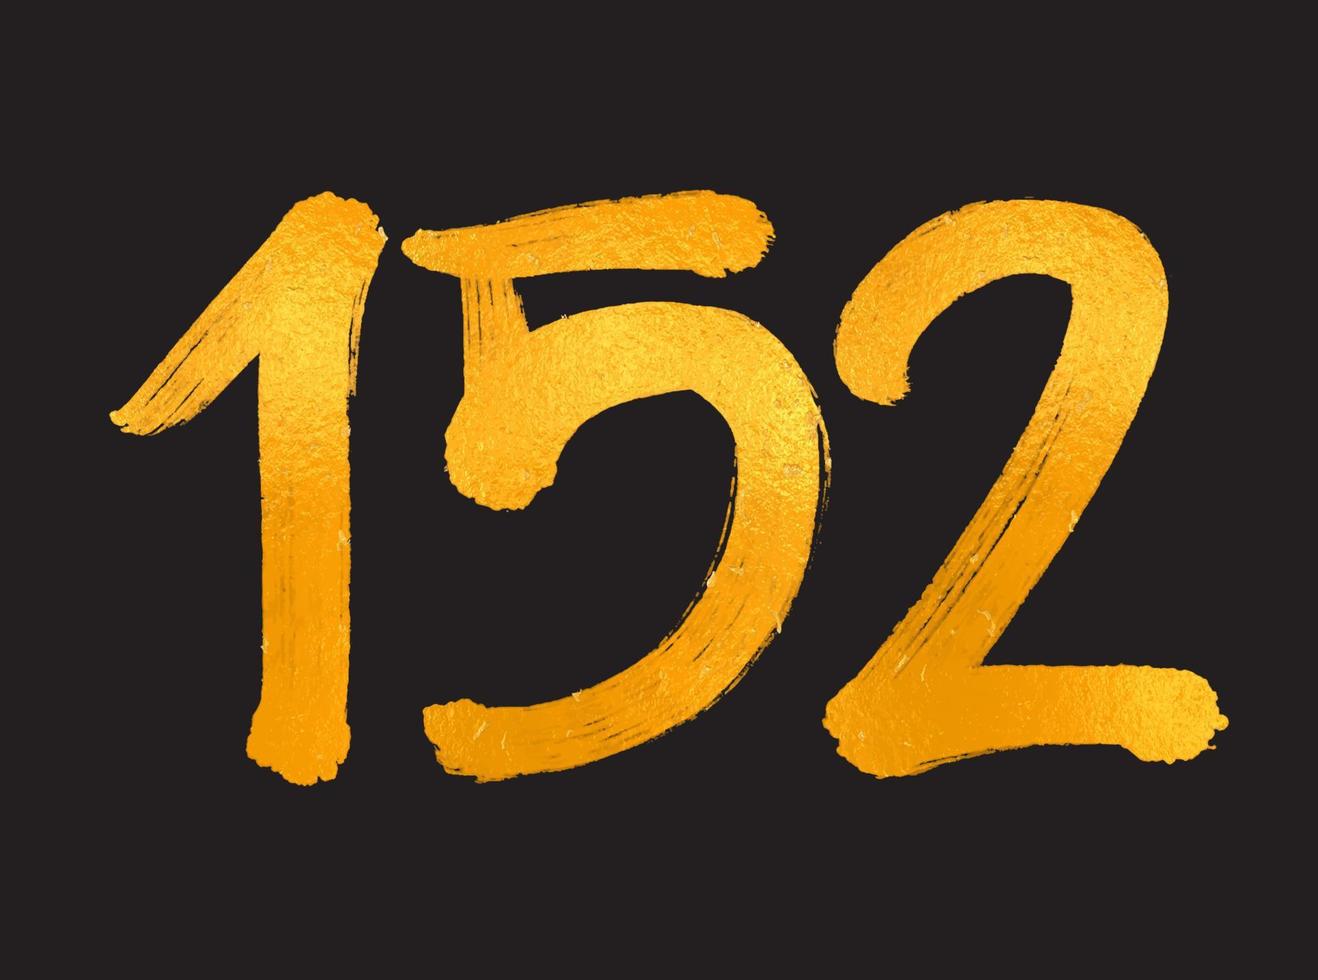 152-Nummer-Logo-Vektorillustration, 152-jähriges Jubiläumsfeier-Vektorvorlage, 152. Geburtstag, Goldbeschriftung Zahlen Pinselzeichnung handgezeichnete Skizze, Nummer-Logo-Design für Druck, T-Shirt vektor